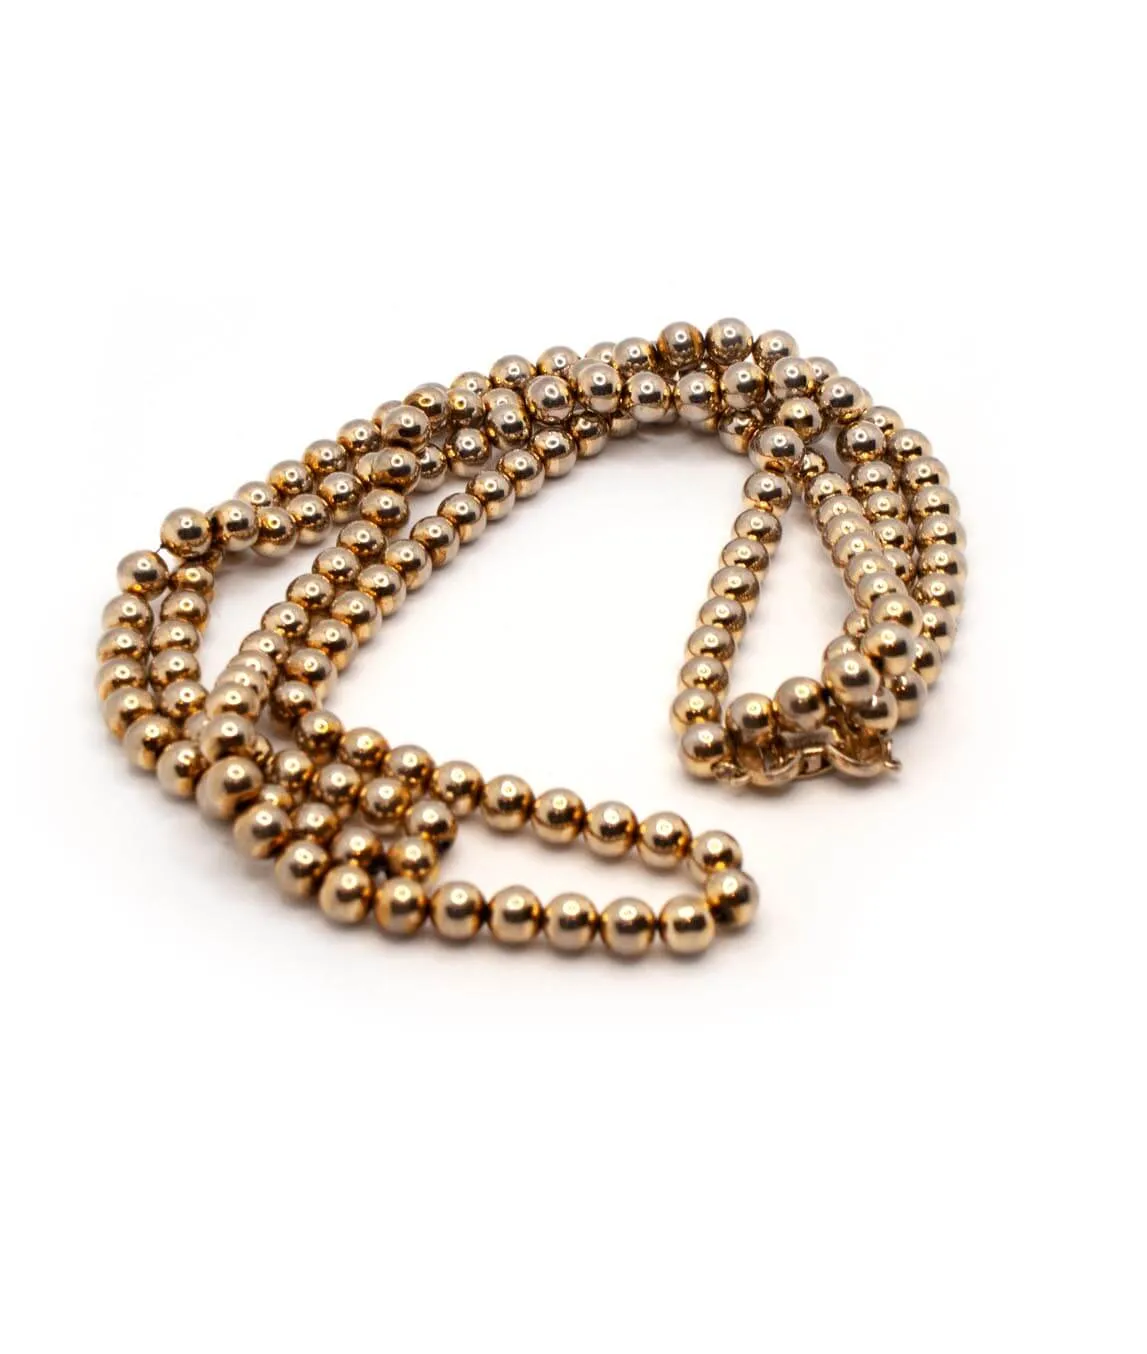 Vintage Kramer gold-coloured bead necklace